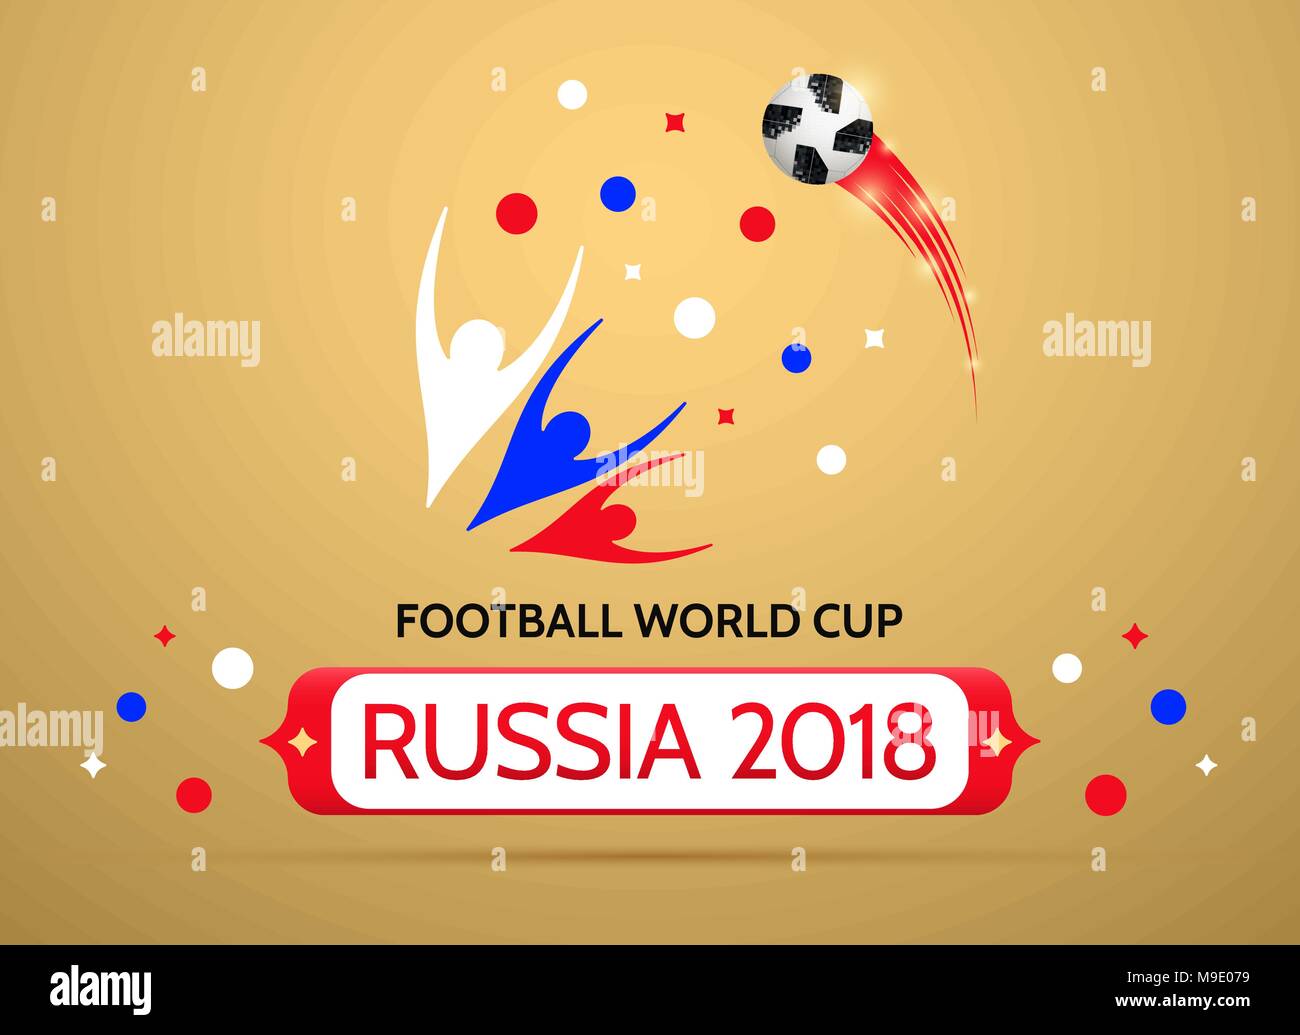 Fußball-Europameisterschaft in Russland 2018. Vektor Banner der Fußball WM  in Russland Stock-Vektorgrafik - Alamy